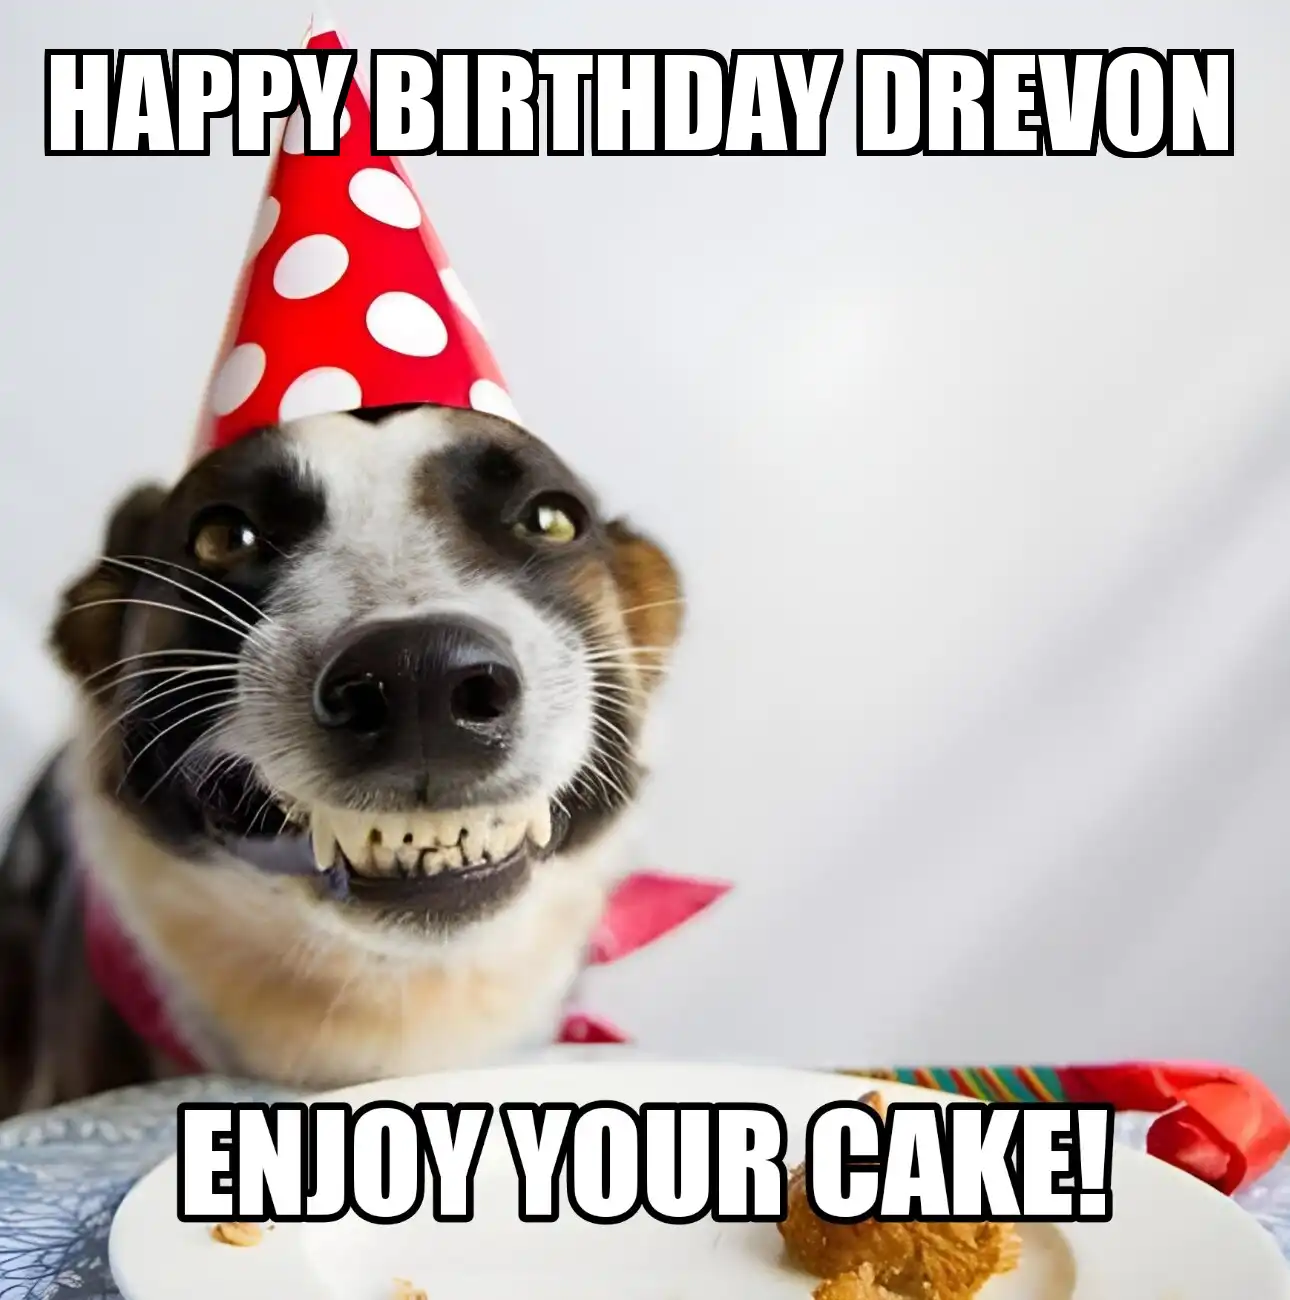 Happy Birthday Drevon Enjoy Your Cake Dog Meme